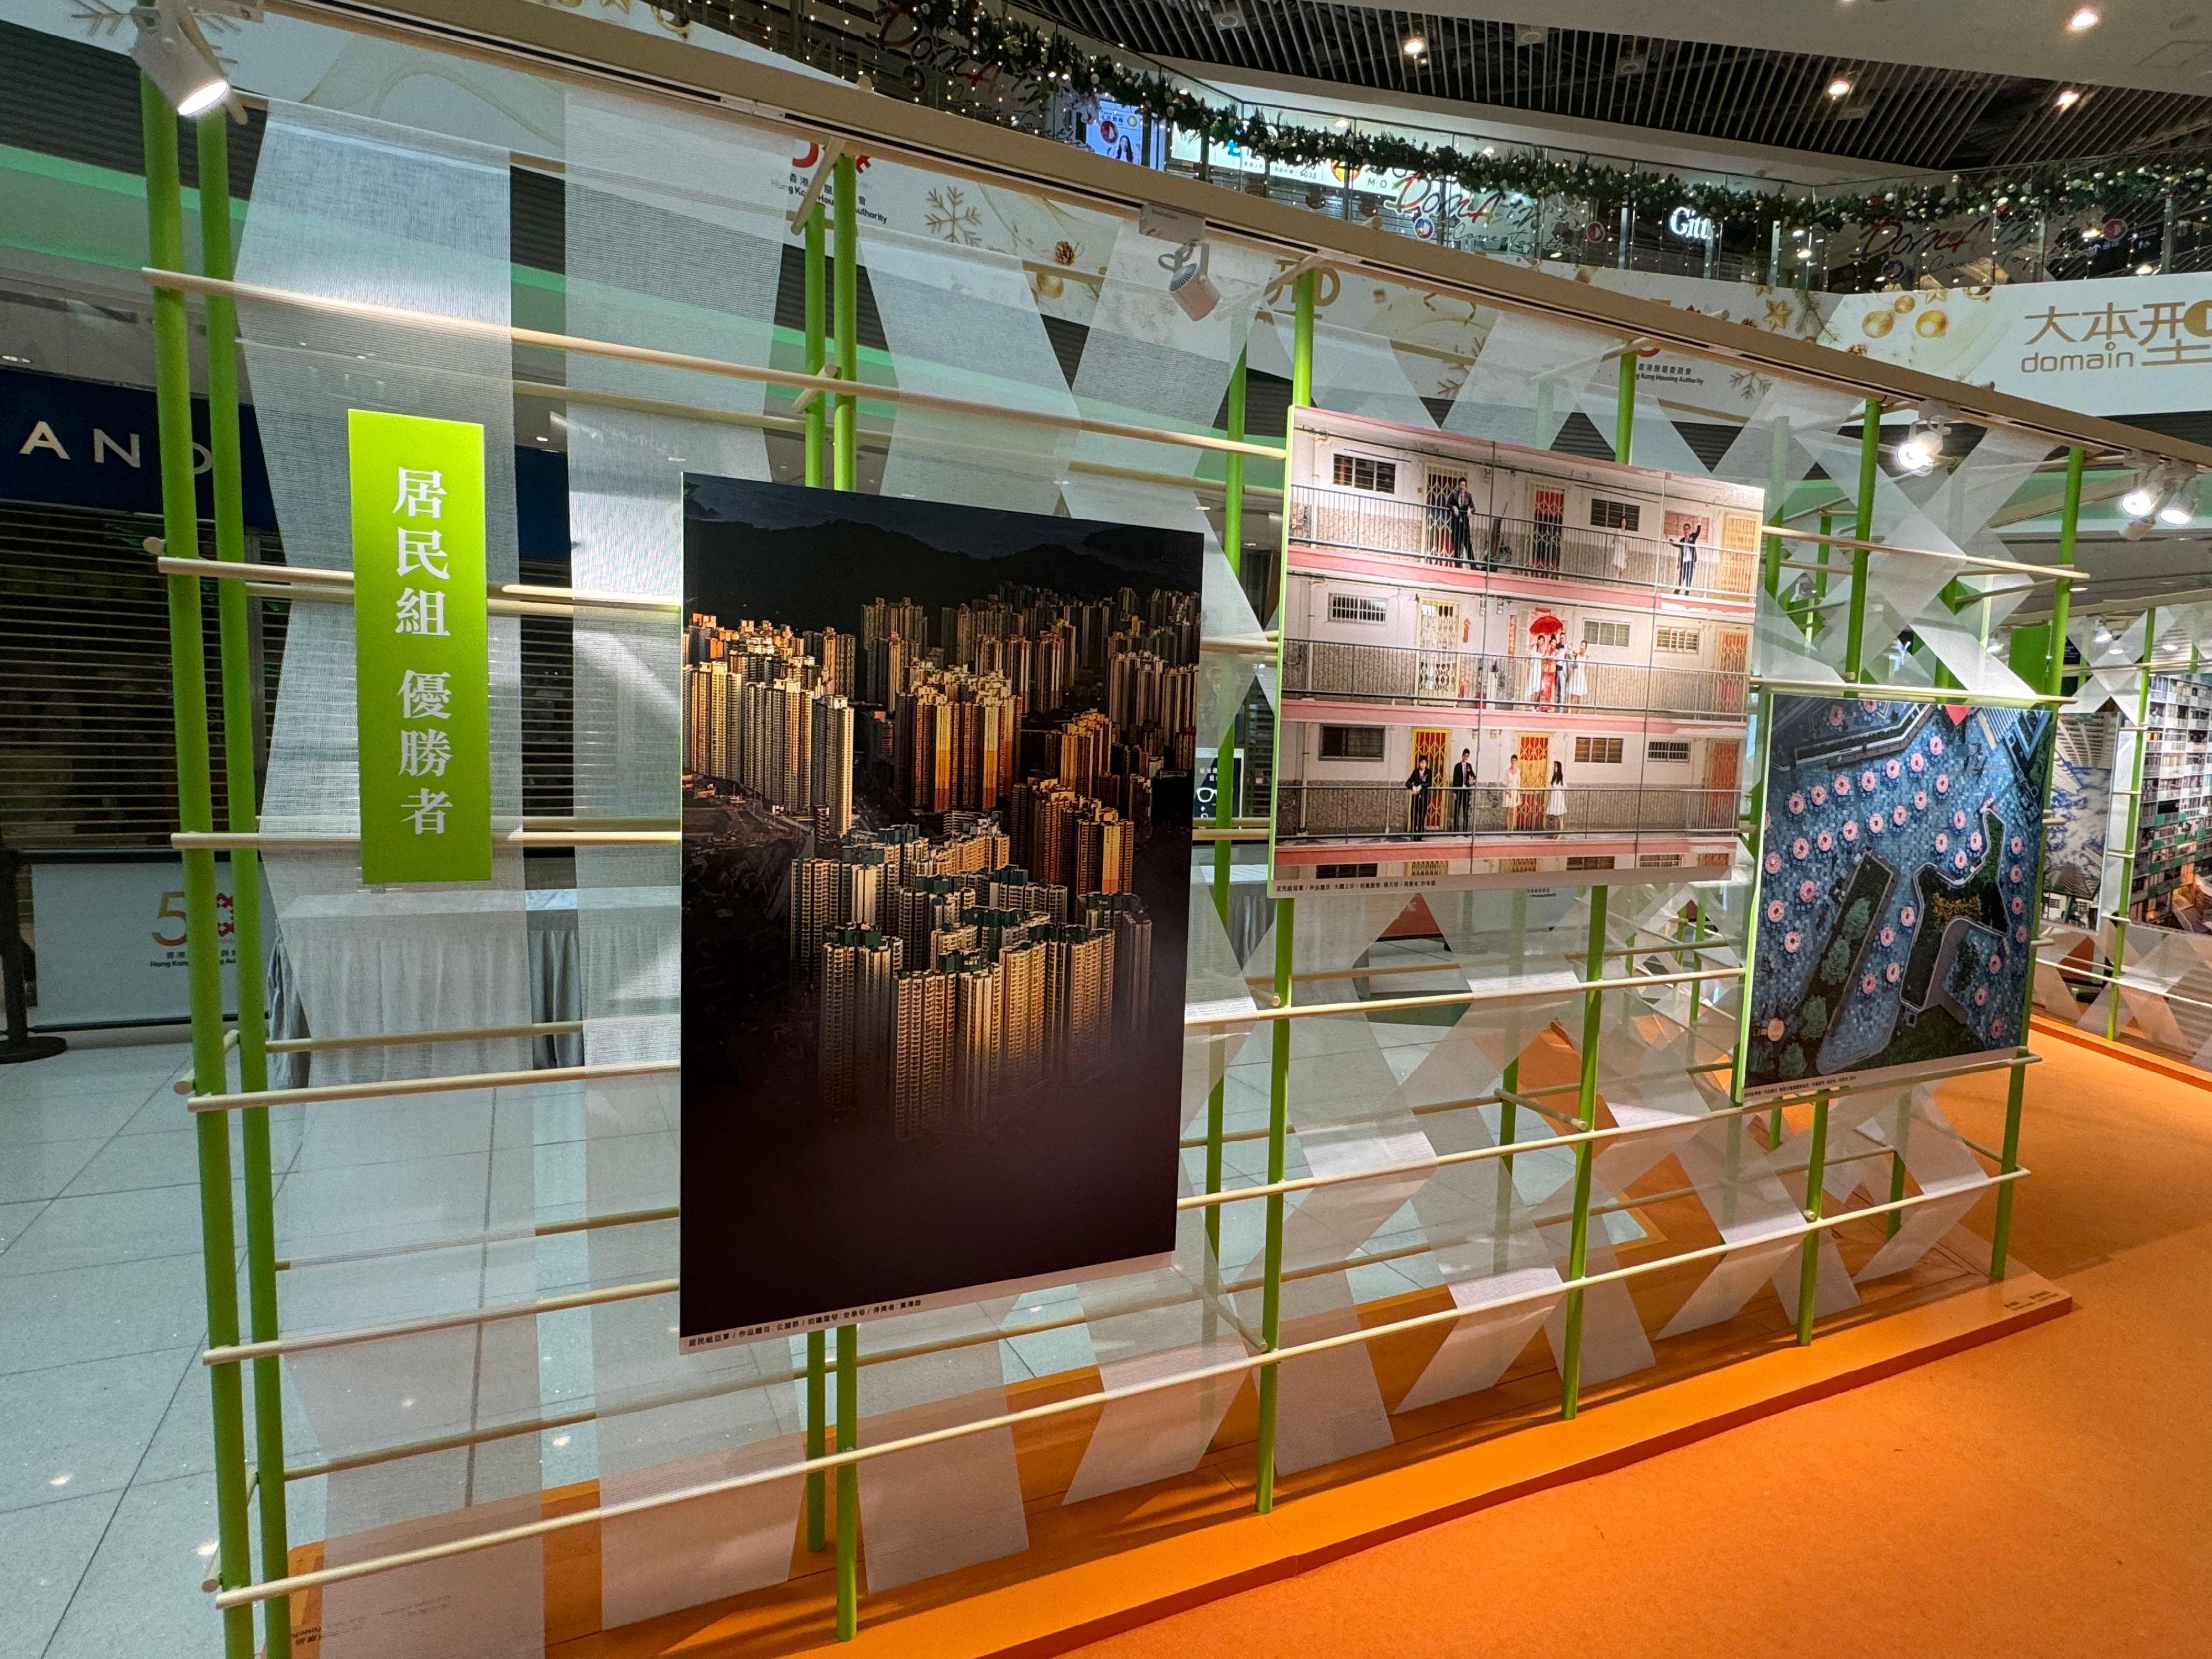 「房委会50周年公屋摄影比赛」优胜作品在大本型商场中庭展出。